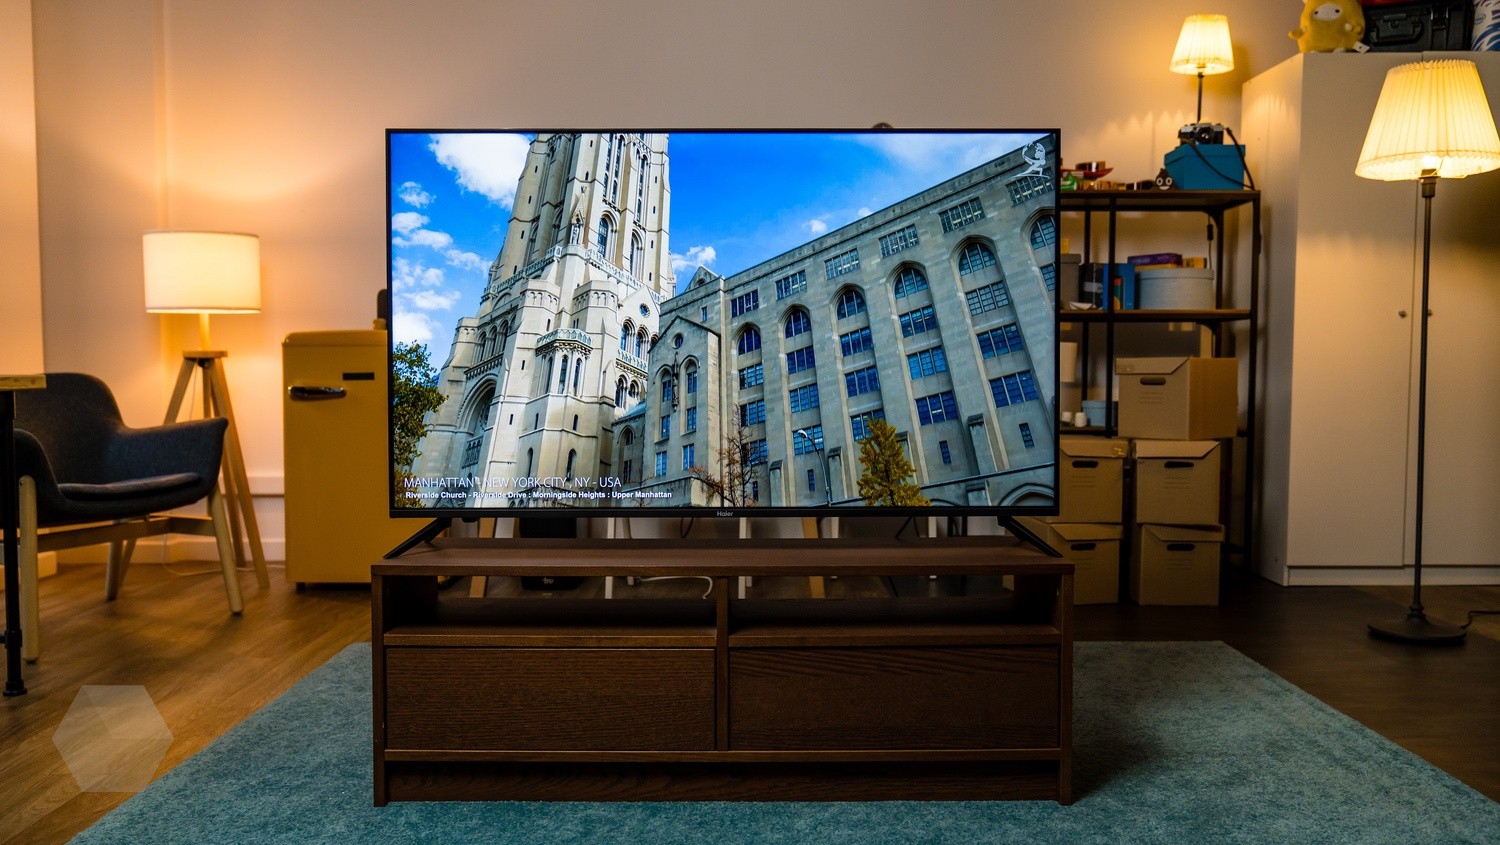 Обзор Haier Smart TV BX. Умный 55-дюймовый телевизор с демократичной ценой